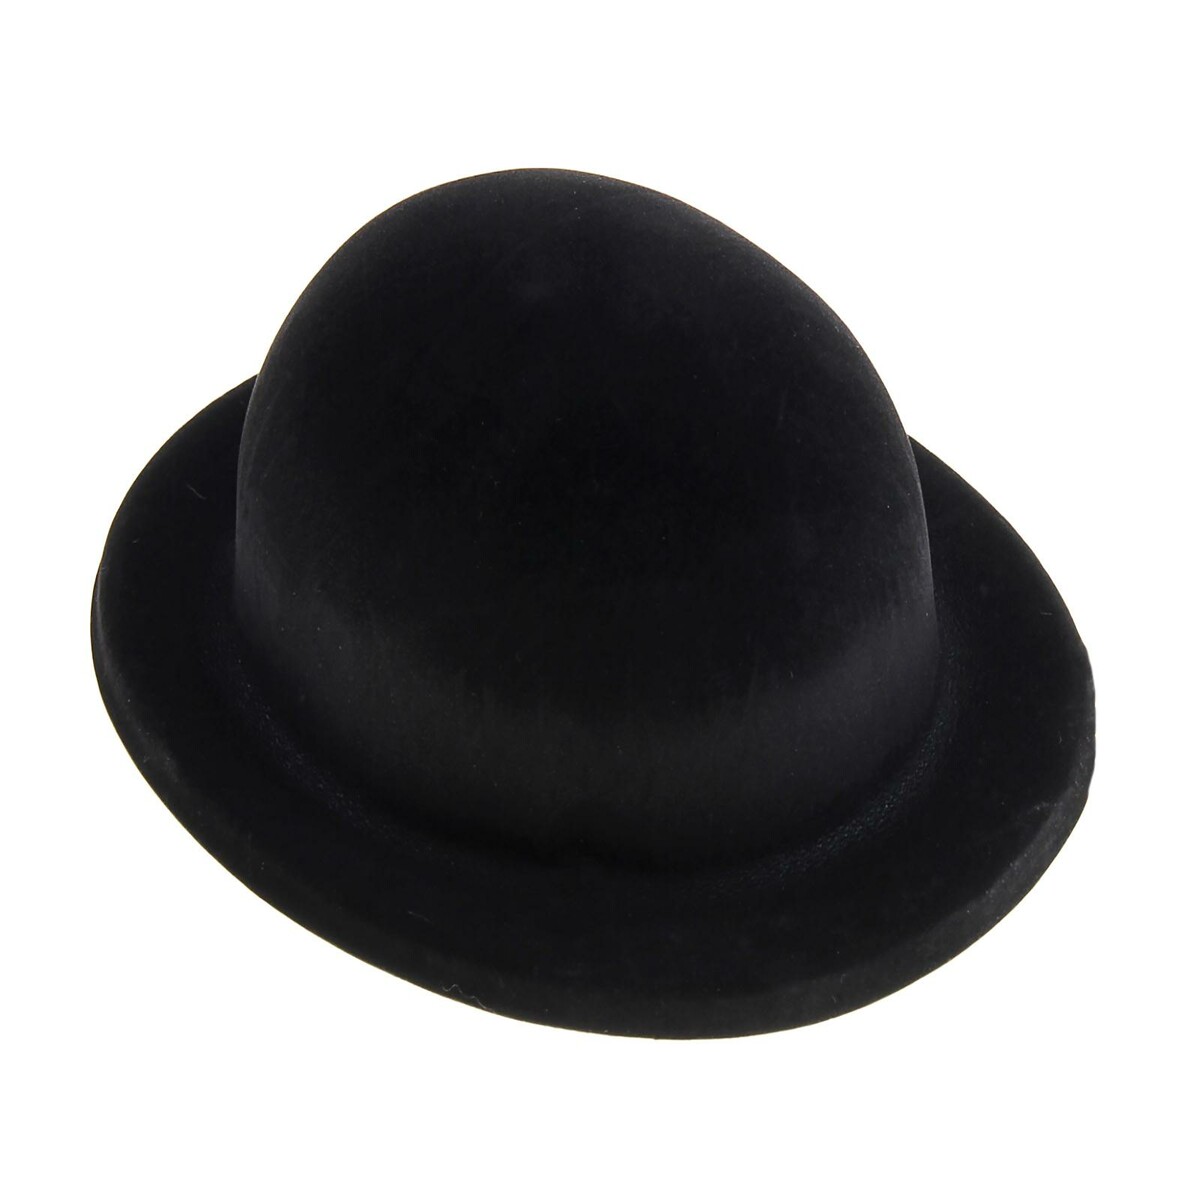 Карнавальная шляпа из пластика, р-р. 56-58, цвет черный